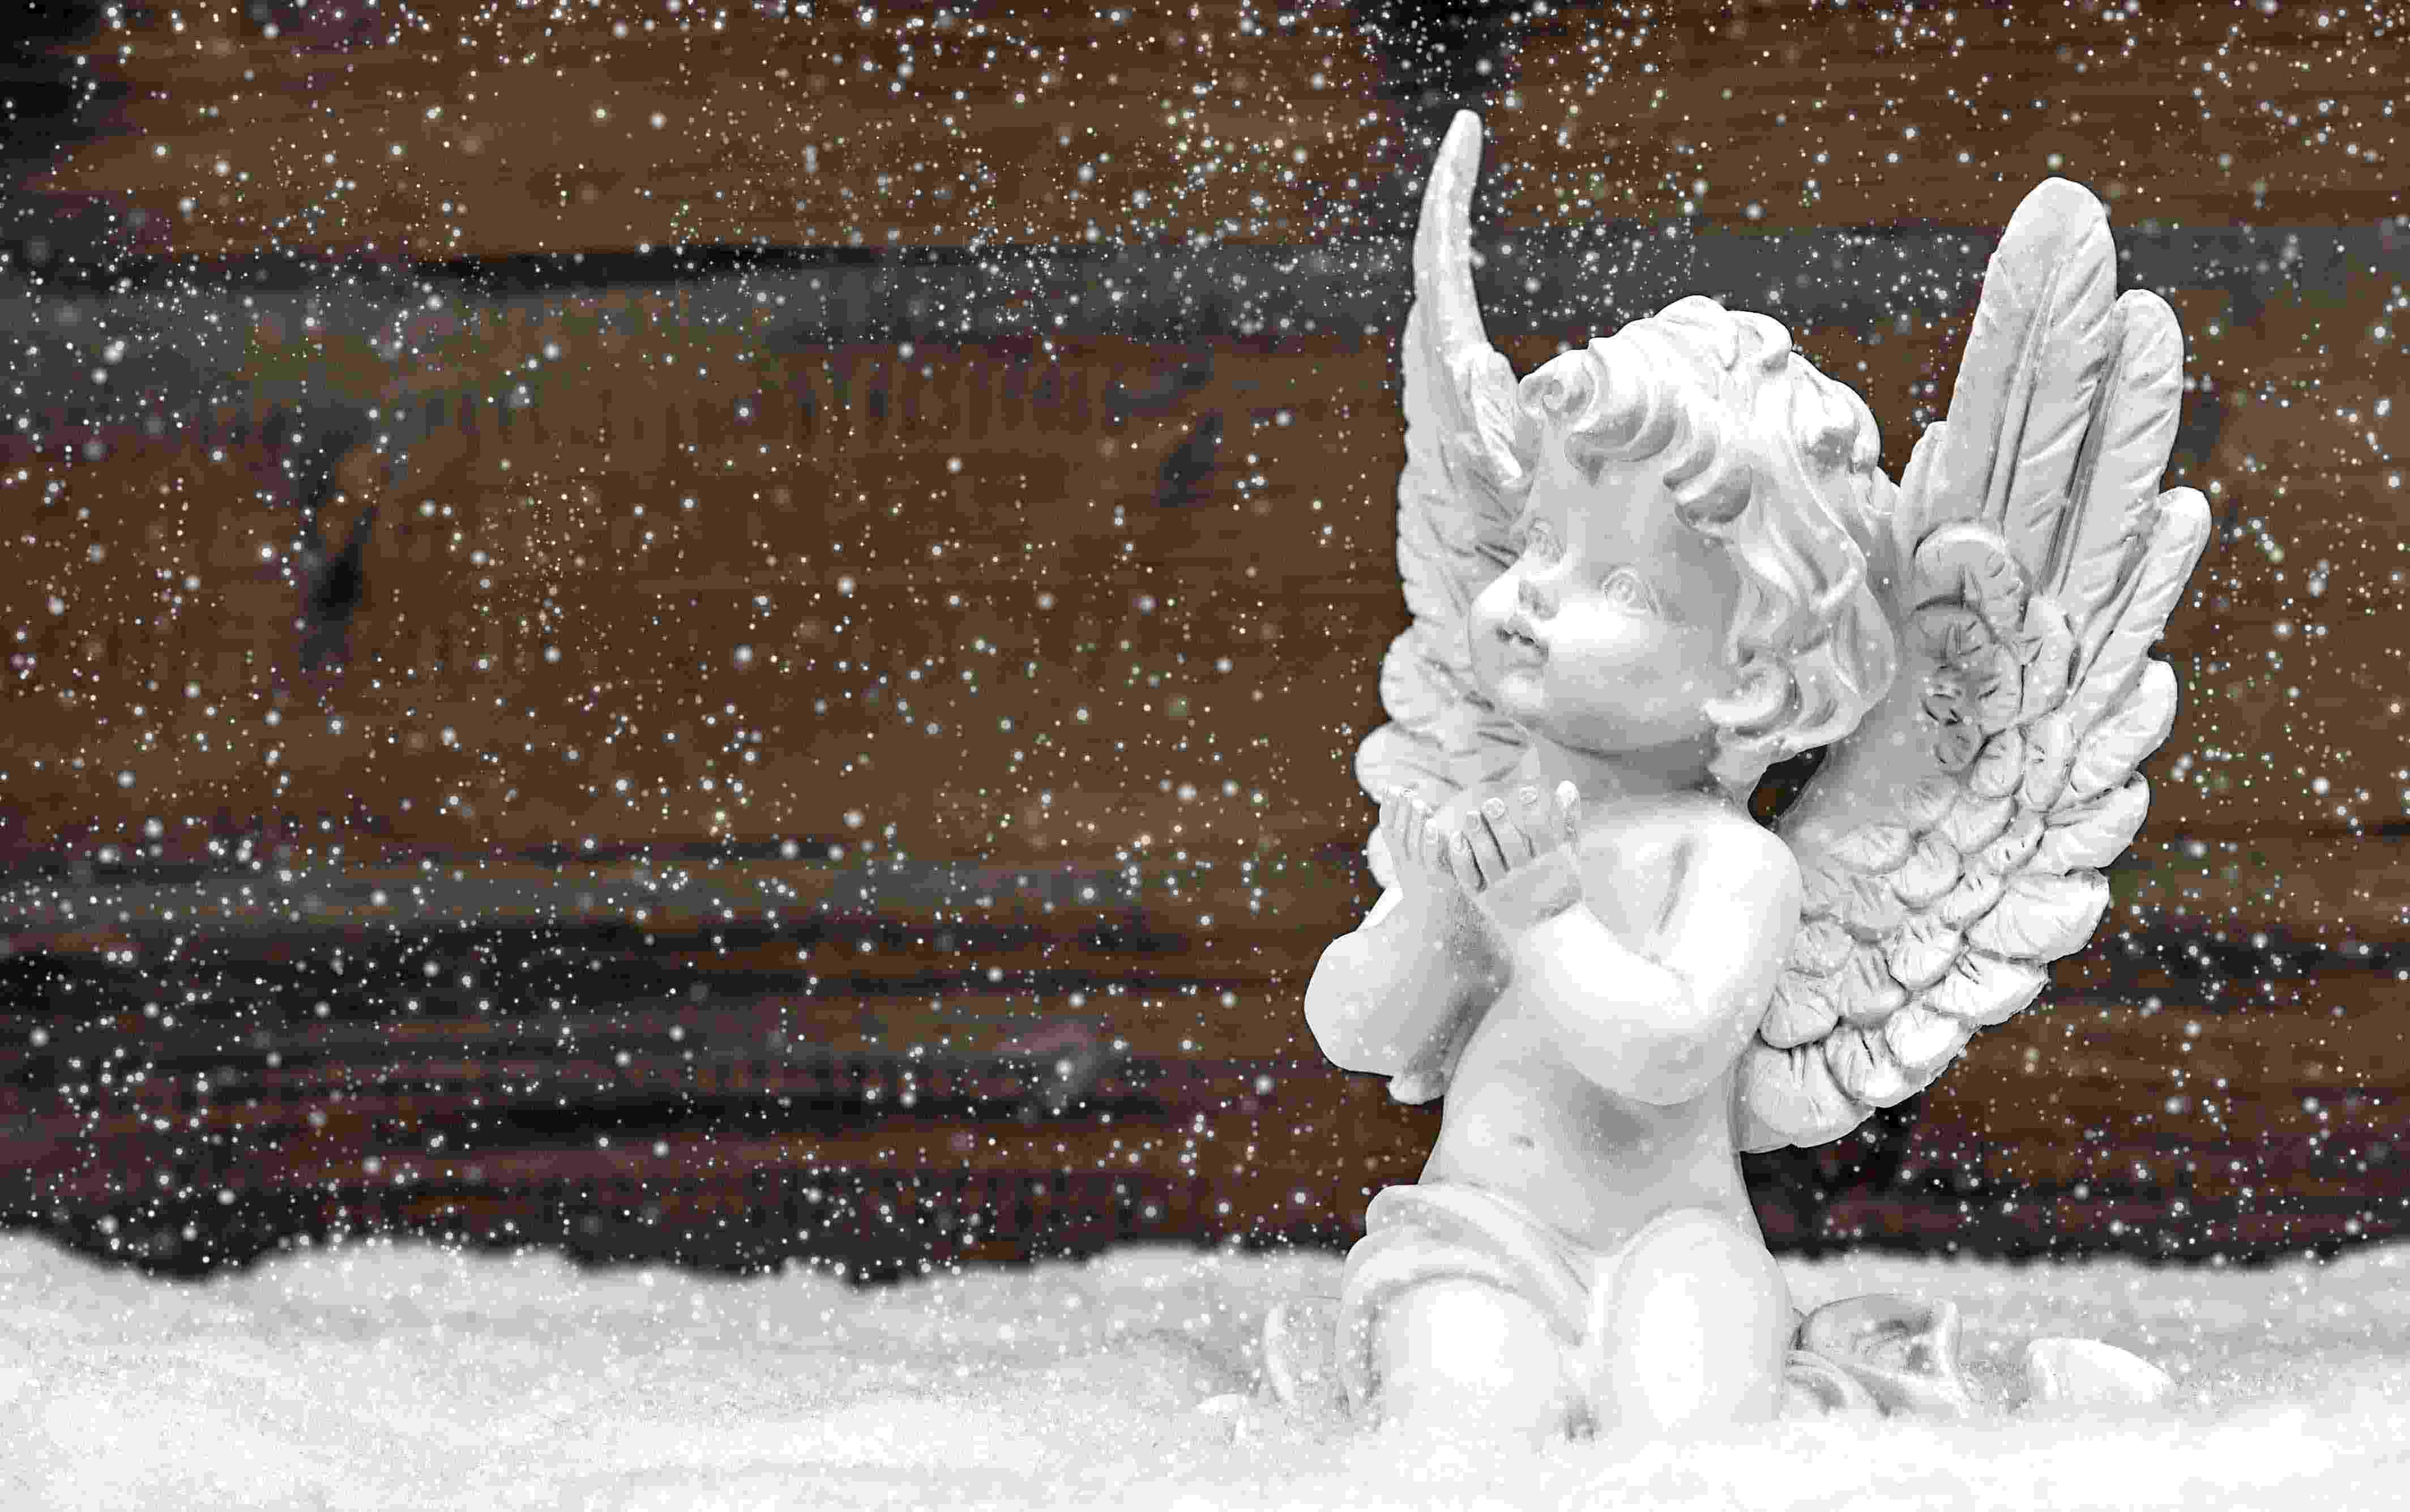 miniatura branca de um anjinho com as mão abertas em direção ao céu, neve caindo, fundo de madeira